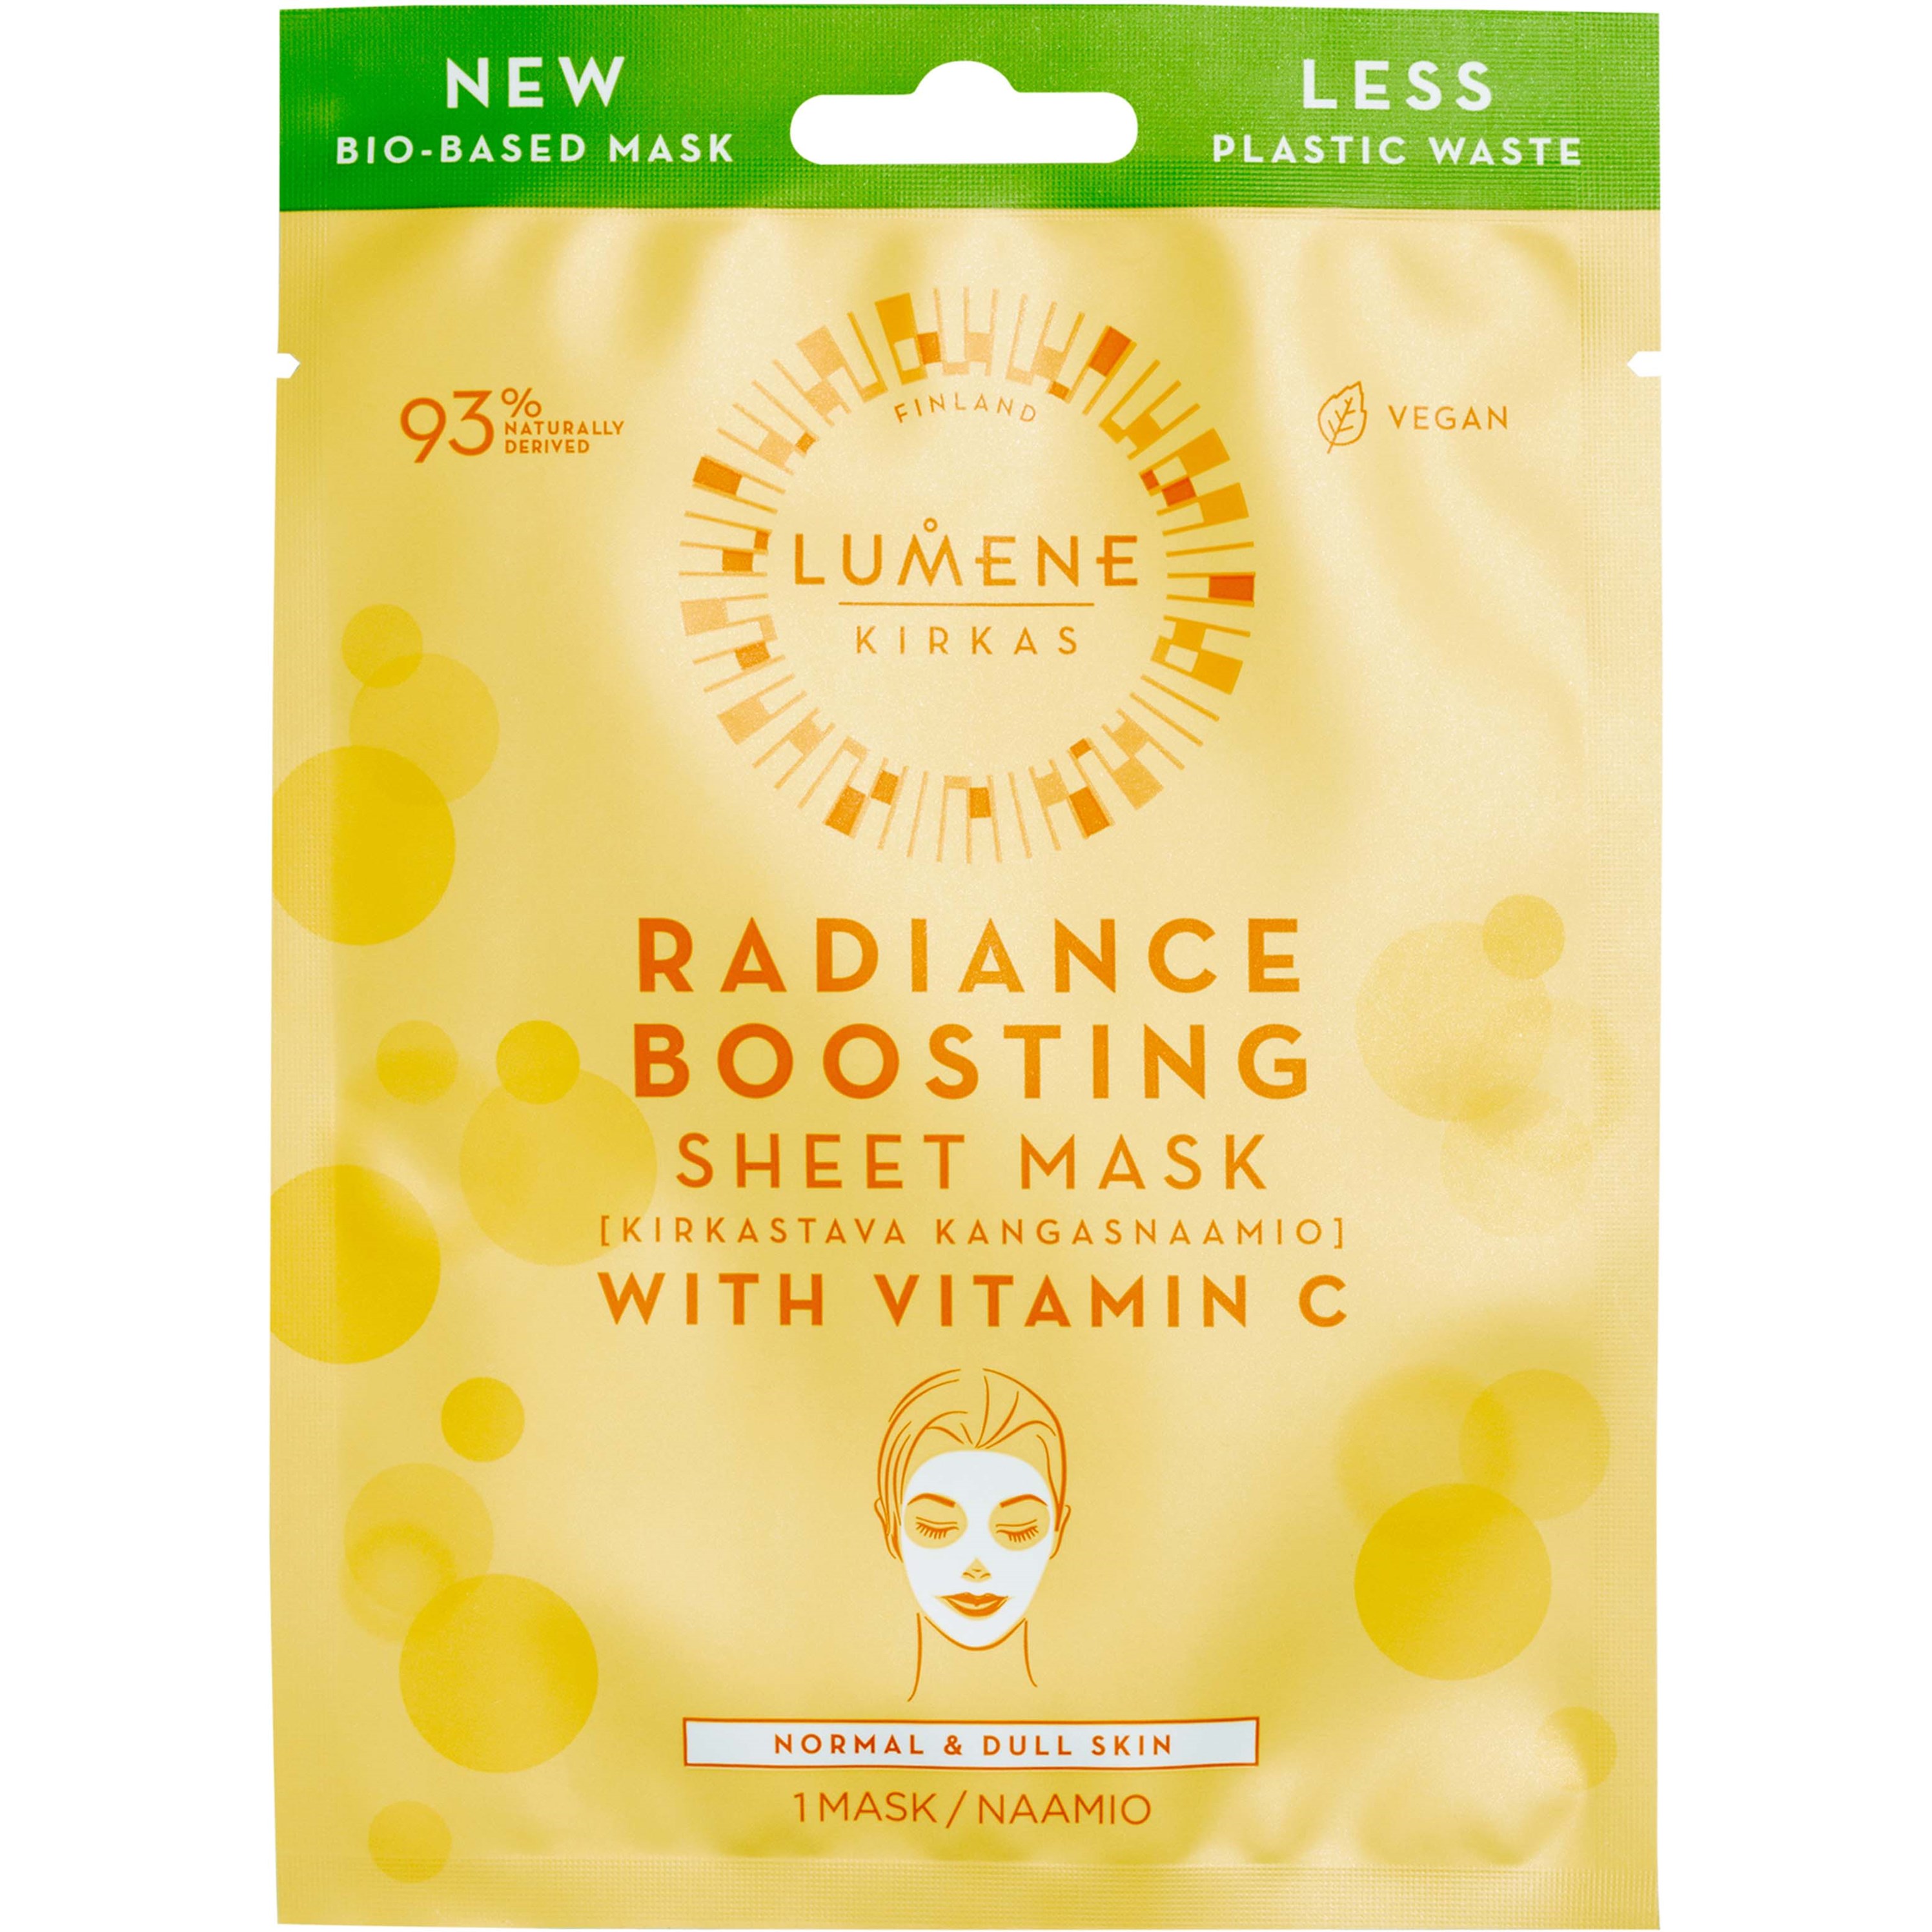 Lumene Kirkas Radiance Boosting Sheet Mask 1 pcs